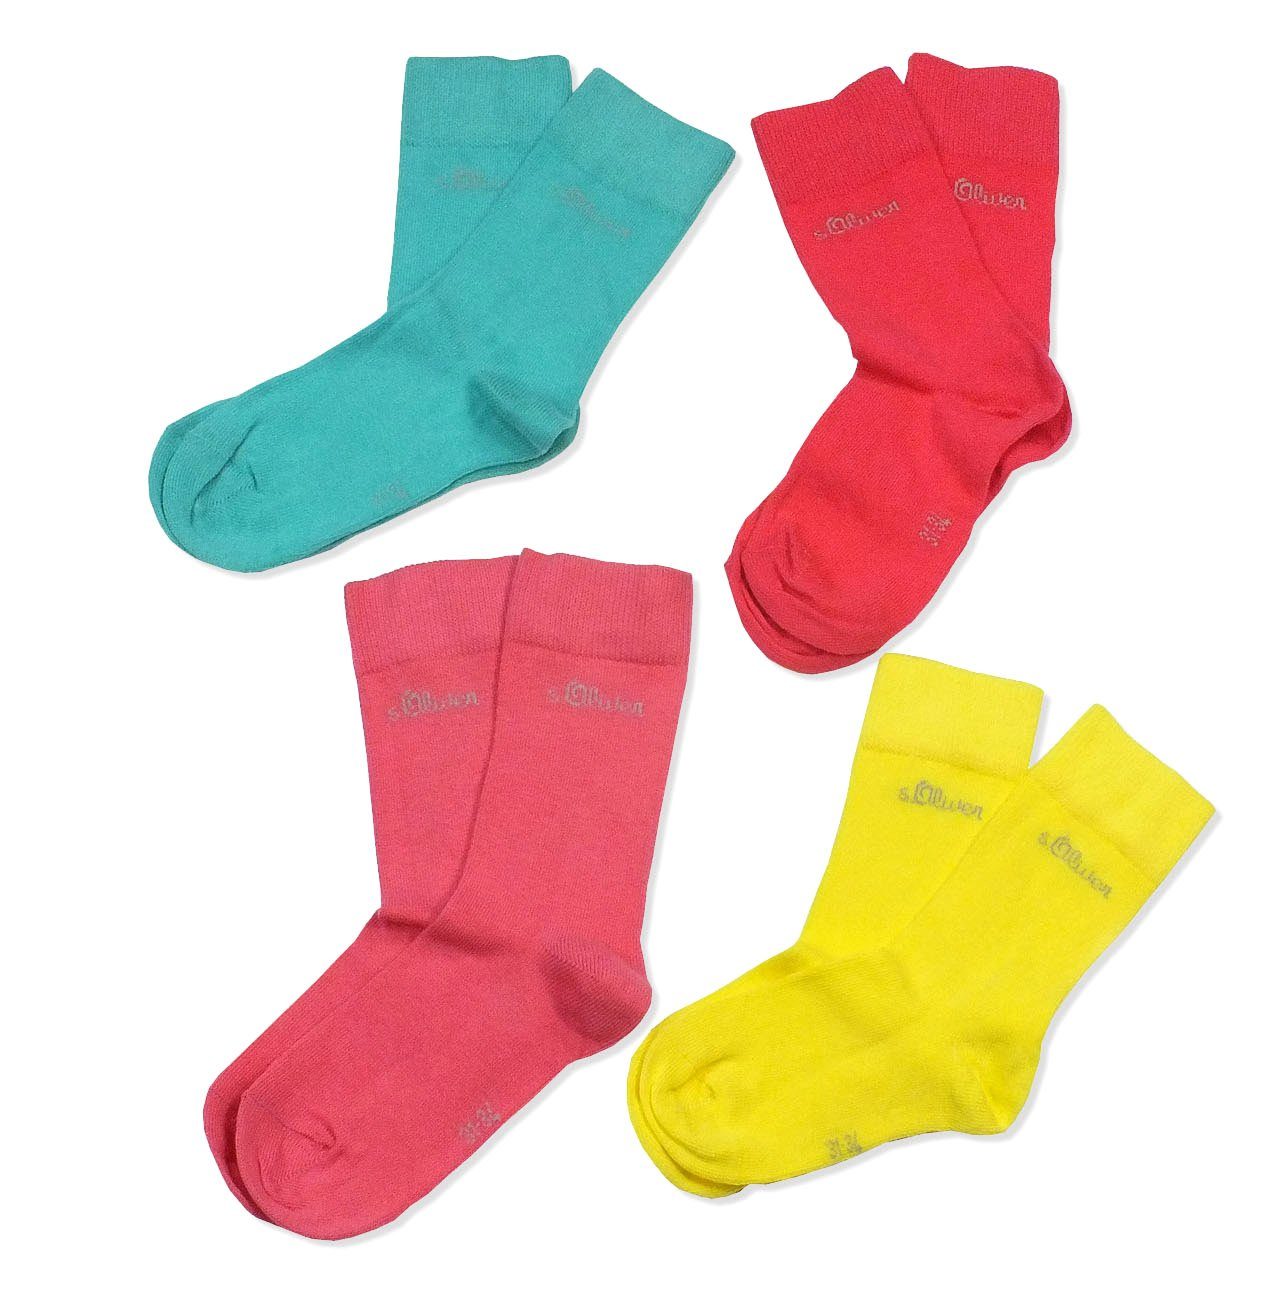 Langsocken Kinder & Socken, calypso mit s.Oliver Kindersocken (Packung, Baumwolle, Mädchen S20205 Jungen 4 Paar) 72 4-Paar,